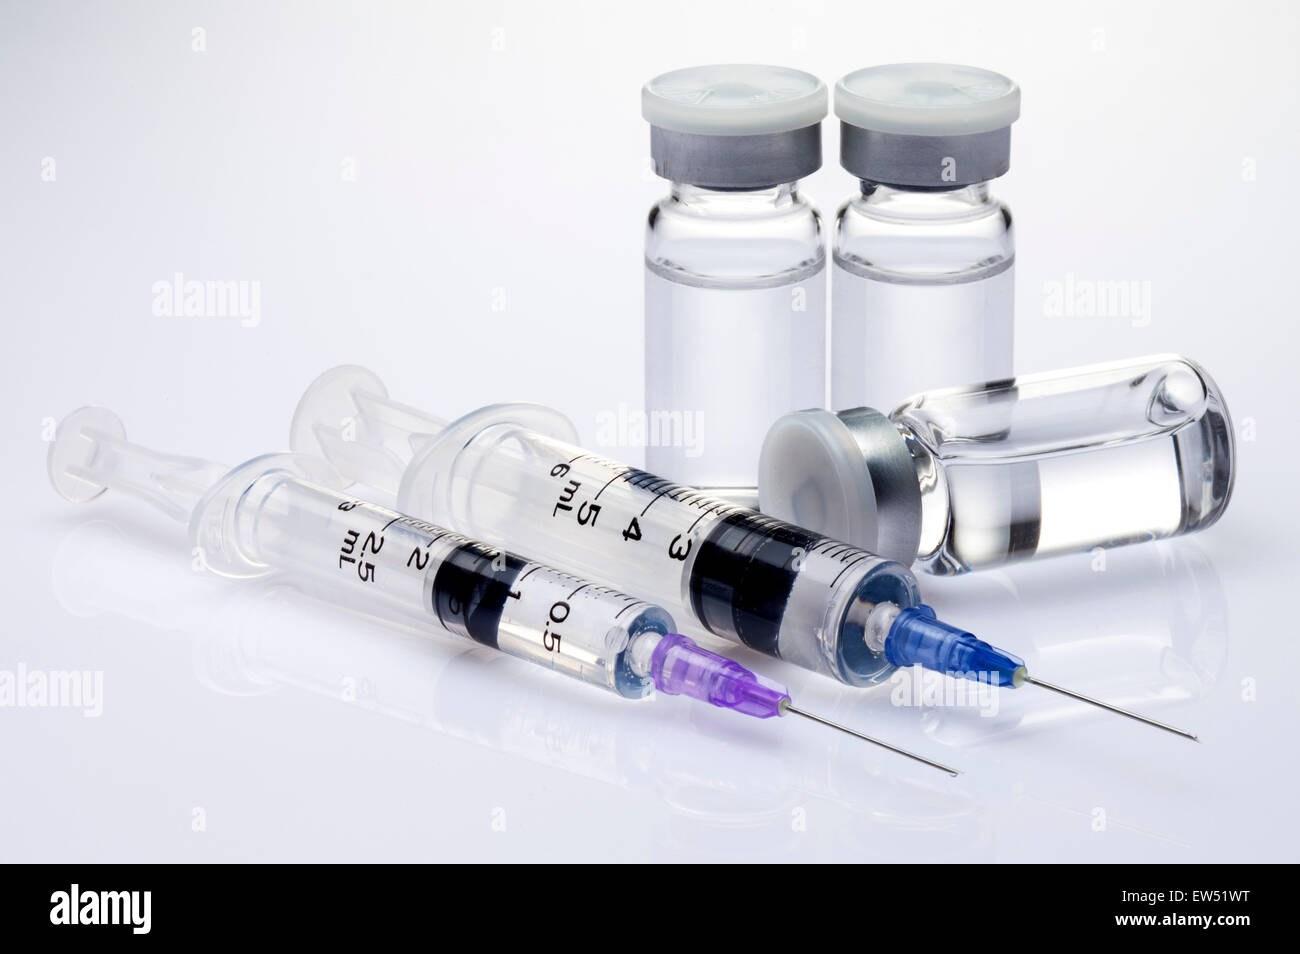 Вакцина 55. Кантер для транспортировки вакцин с бортовым питанием. Лед куптьв аптеке для транспартировки вакци.